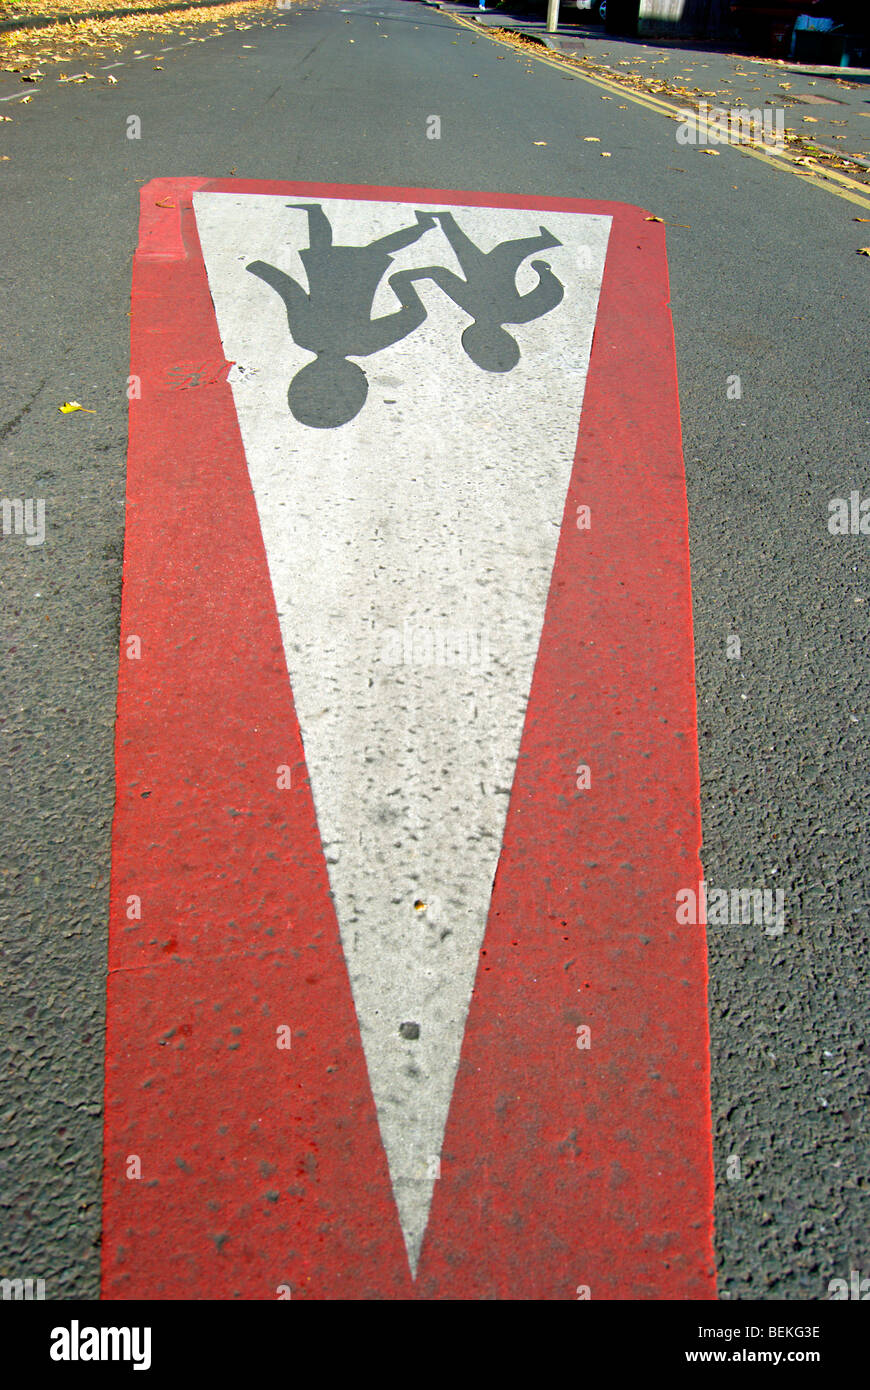 Visto desde un ángulo inusual, un británico de la señalización que indica un lugar donde los niños son propensos a ser cruzar la carretera Foto de stock